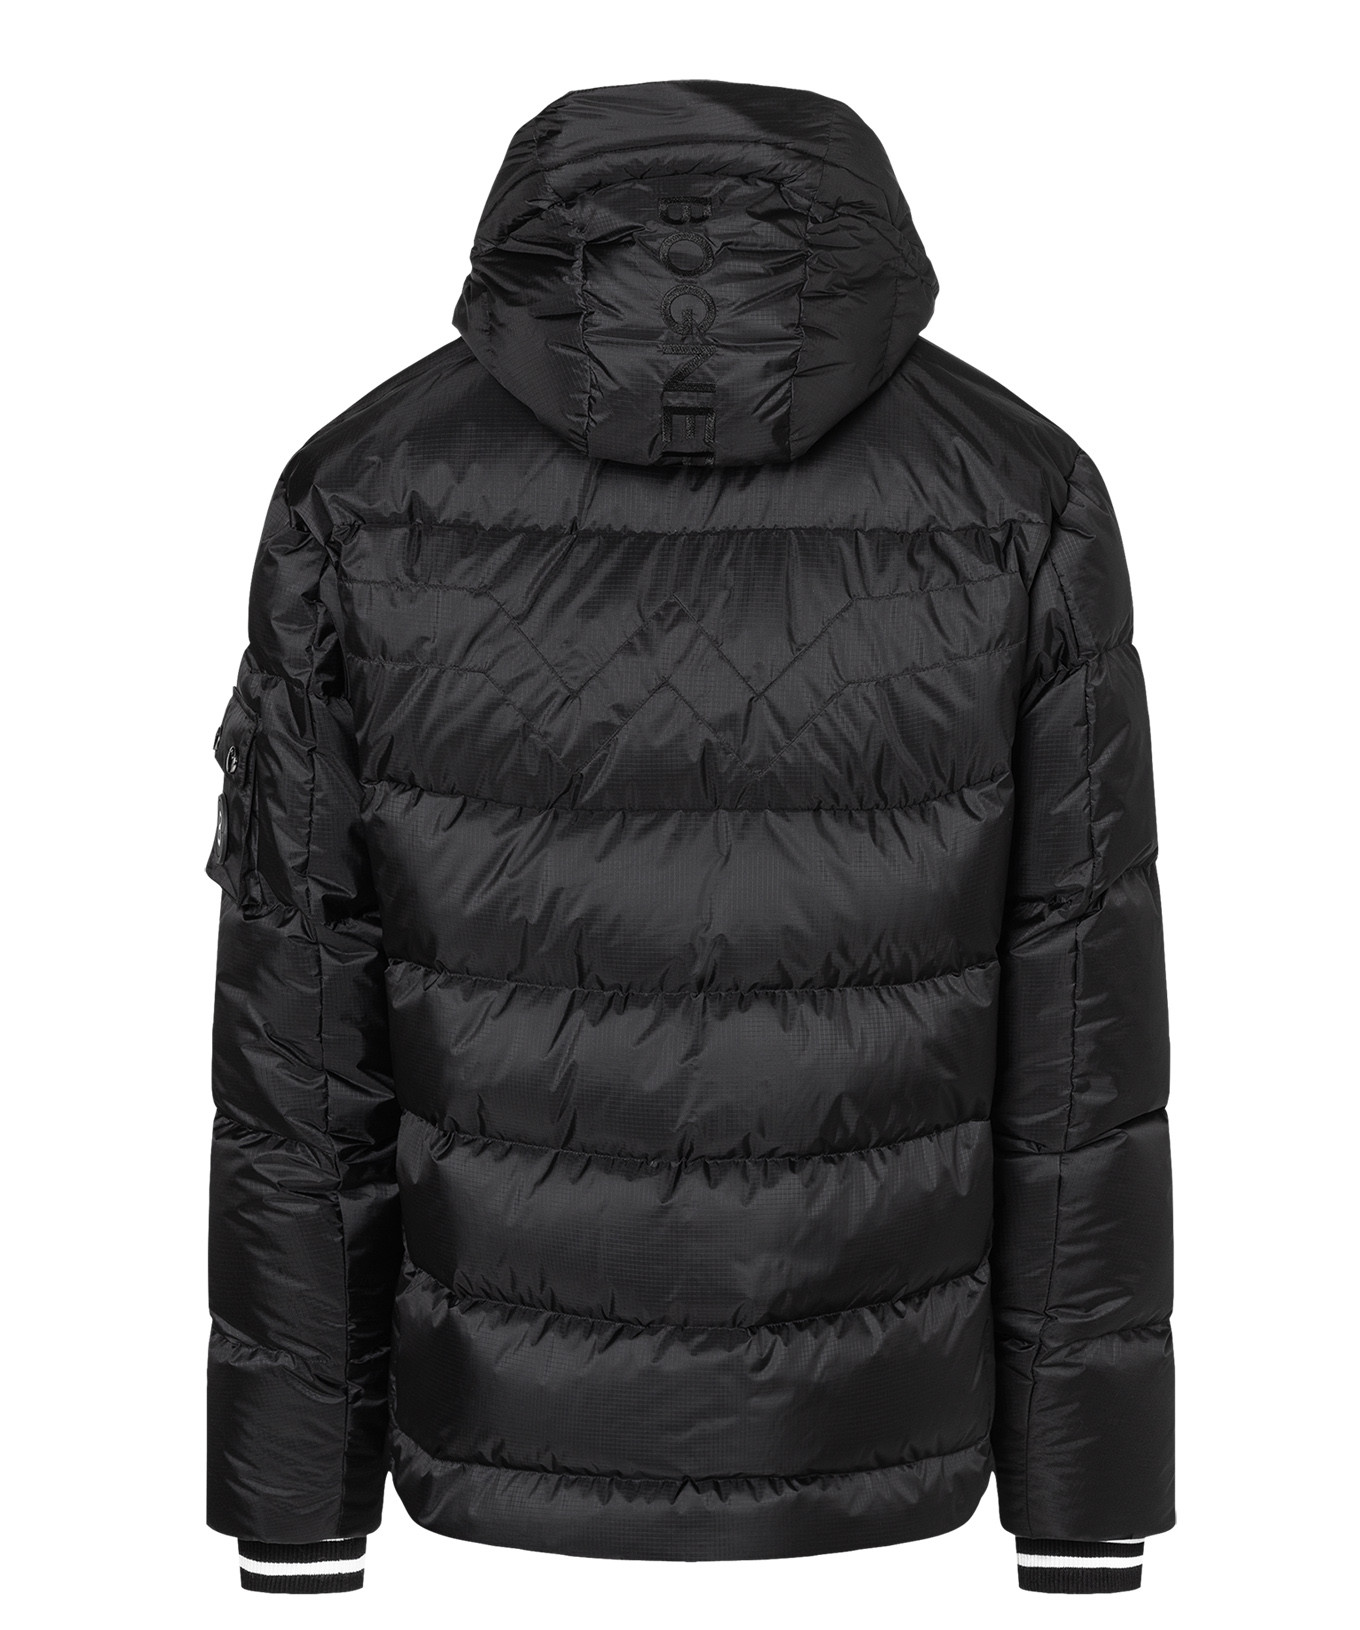 Avalanche Outdoor Supply Company Boys Hooded Jacket Size 7 EUC